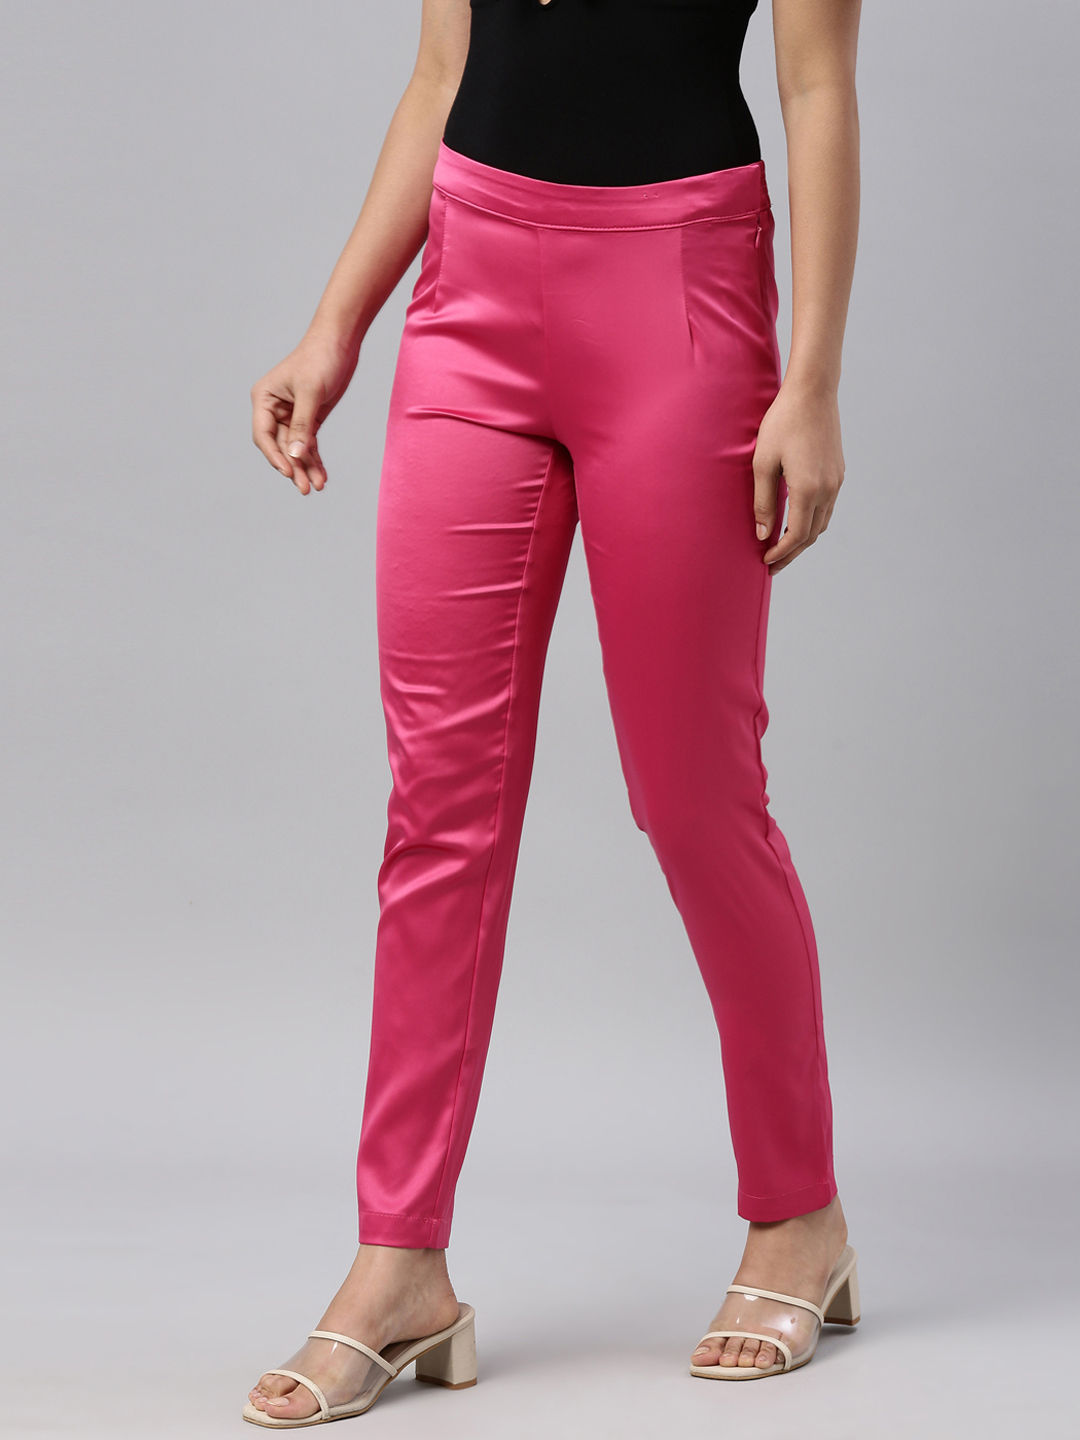 Styling Hot Pink Pants for Work - LINDA TENCHI TRAN